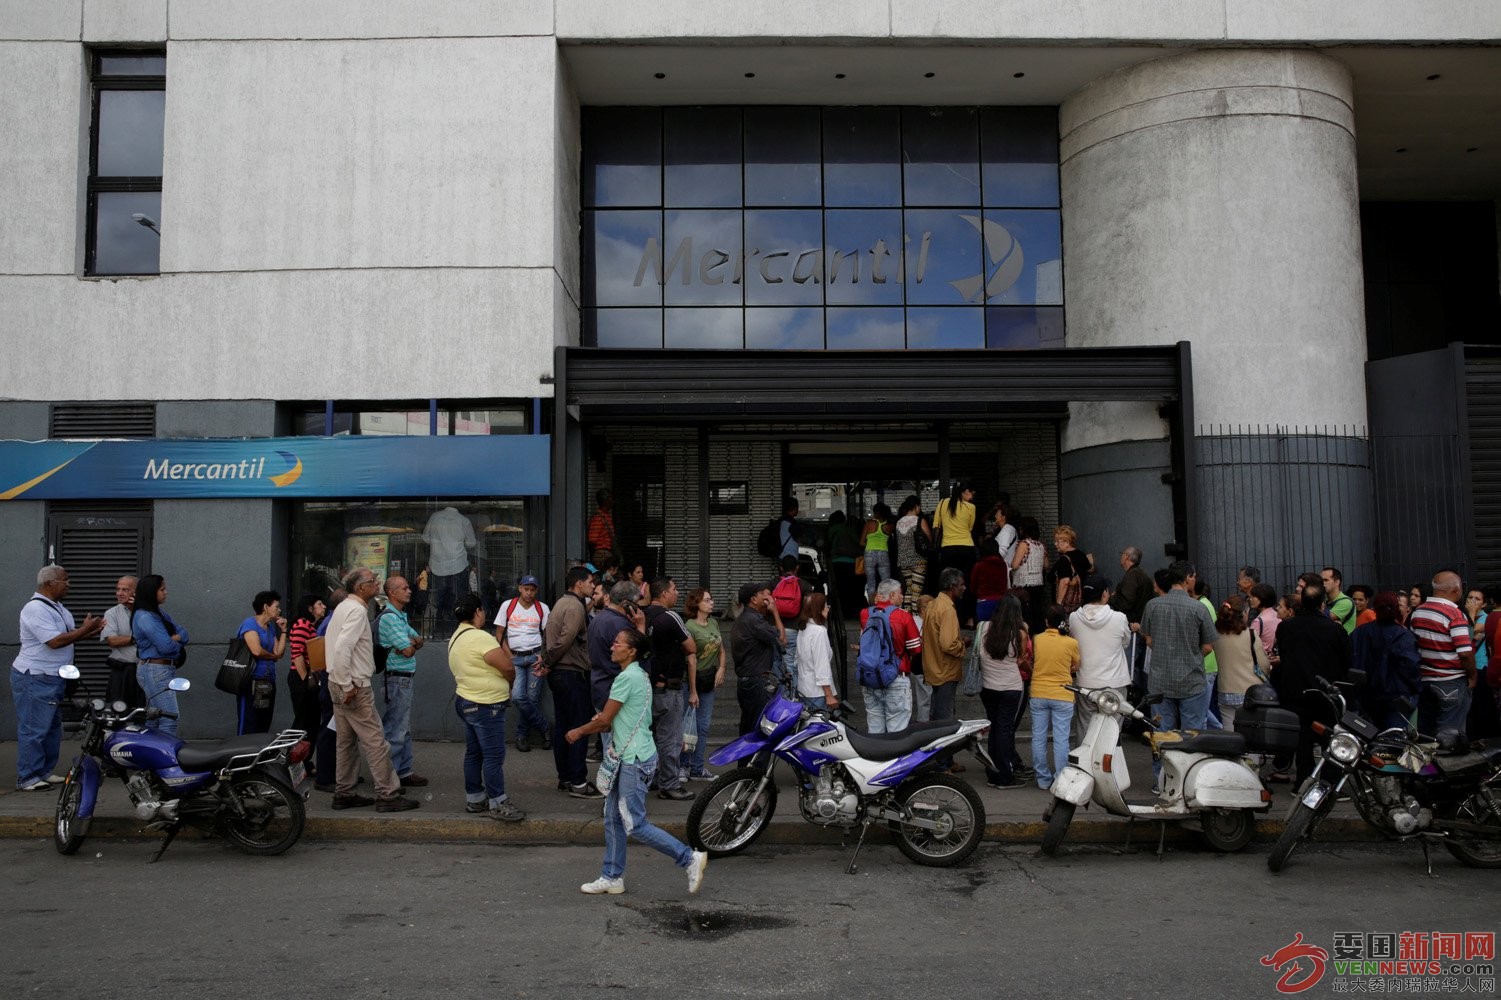 Colas-Bancos-Venezuela-14.jpg